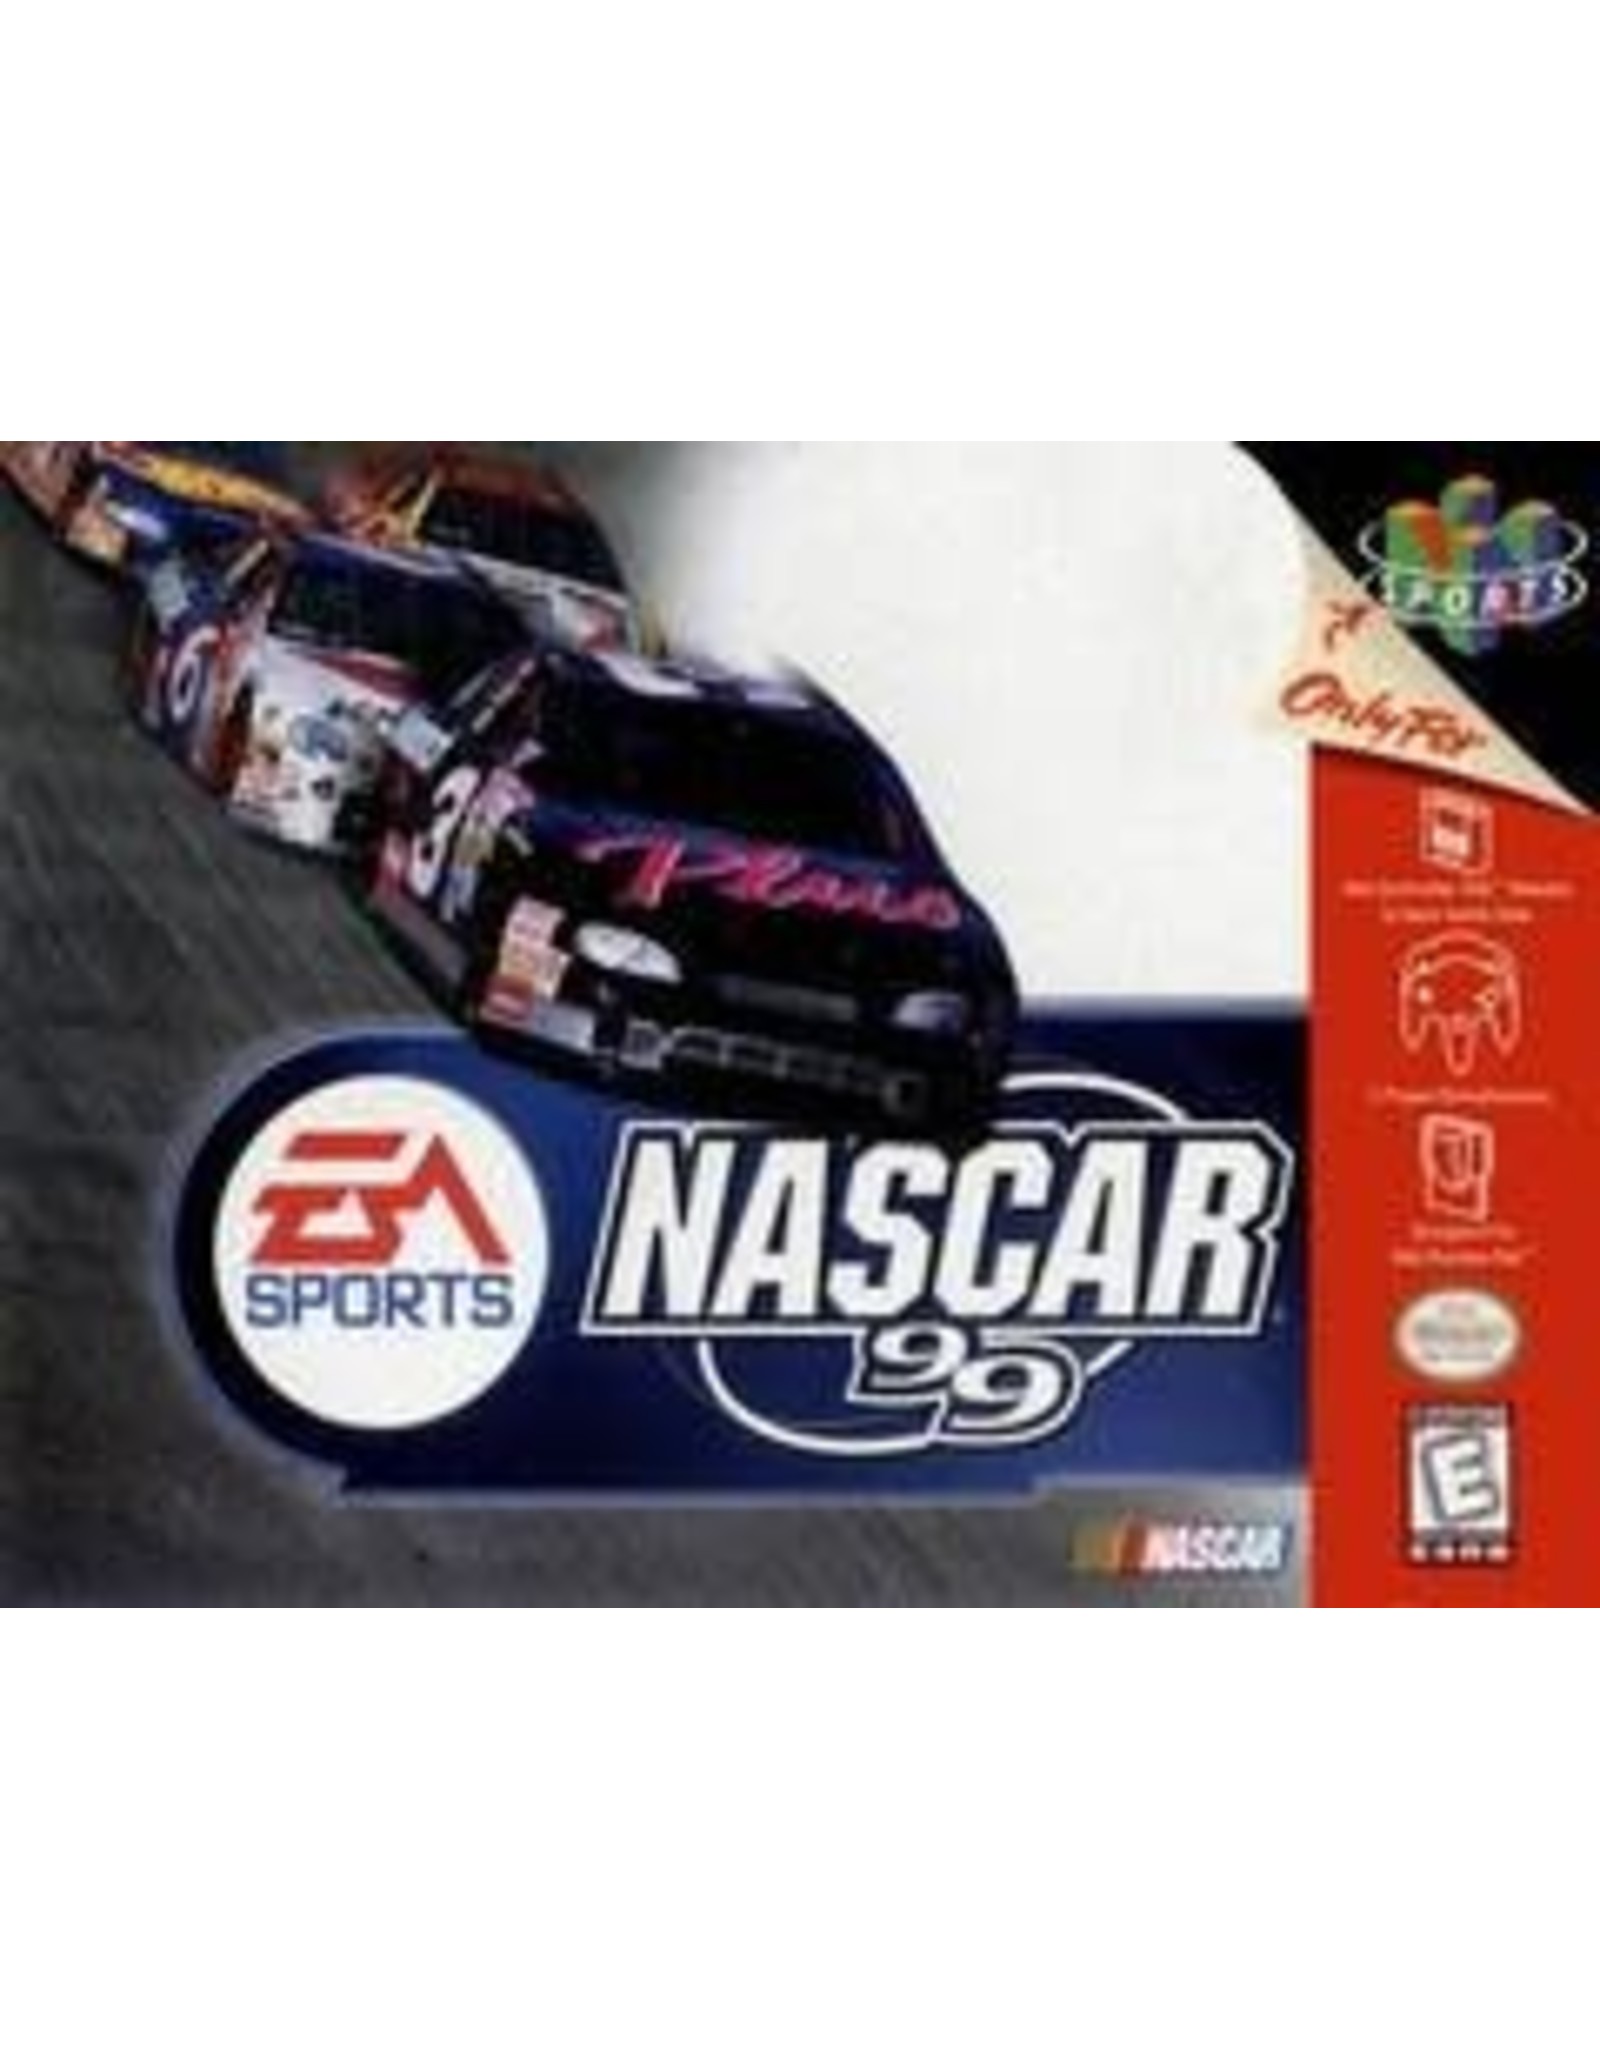 Nintendo 64 NASCAR 99 (CiB)